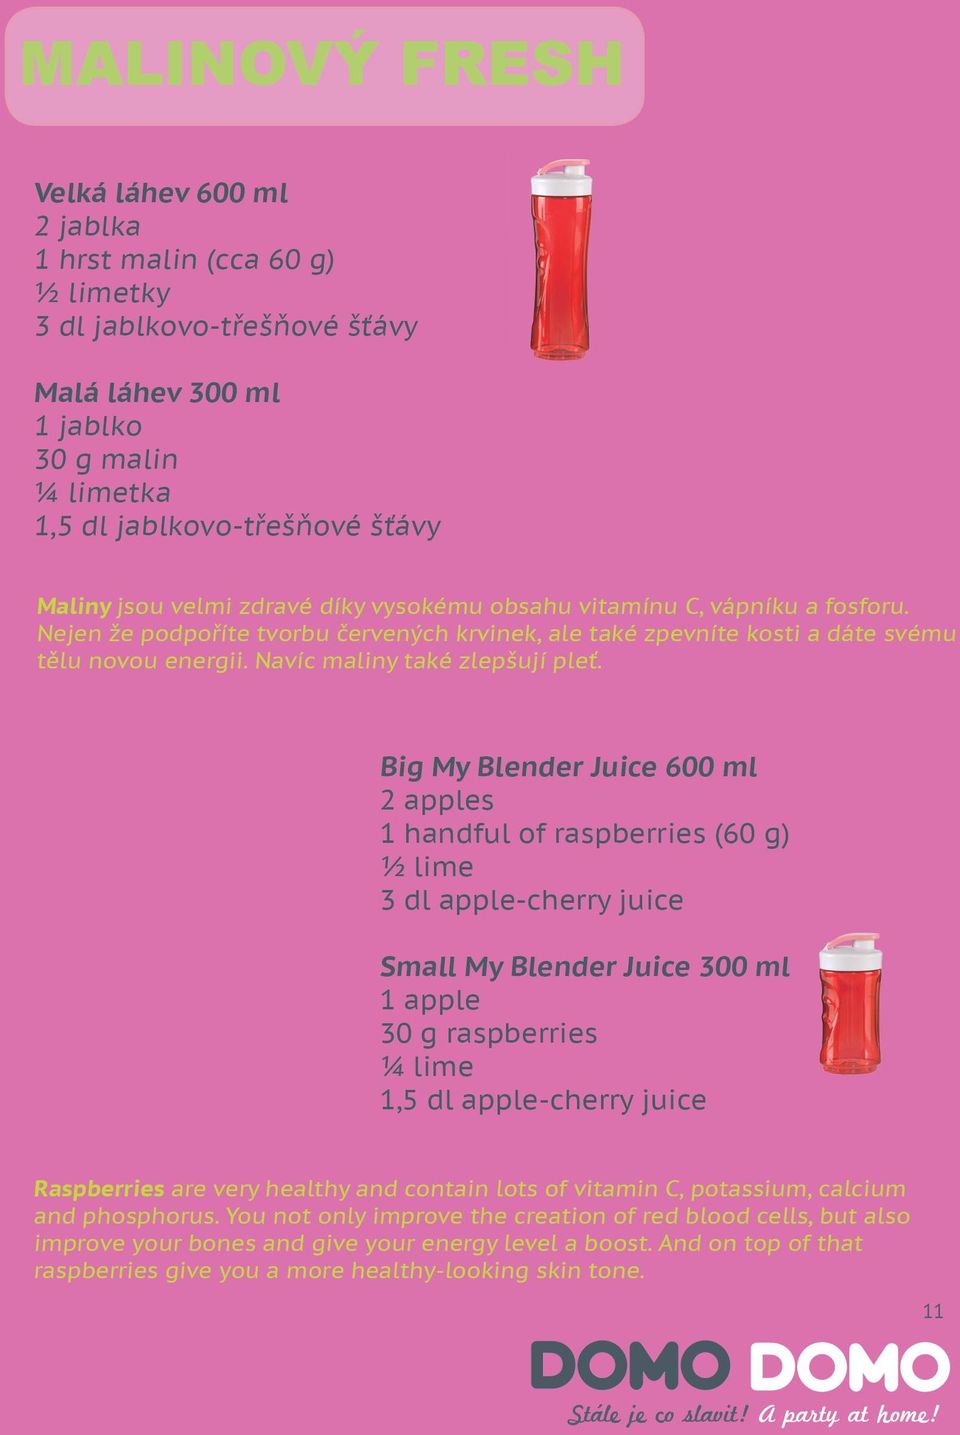 Big My Blender Juice 600 ml 2 apples 1 handful of raspberries (60 g) ½ lime 3 dl apple-cherry juice Small My Blender Juice 300 ml 1 apple 30 g raspberries ¼ lime 1,5 dl apple-cherry juice Raspberries